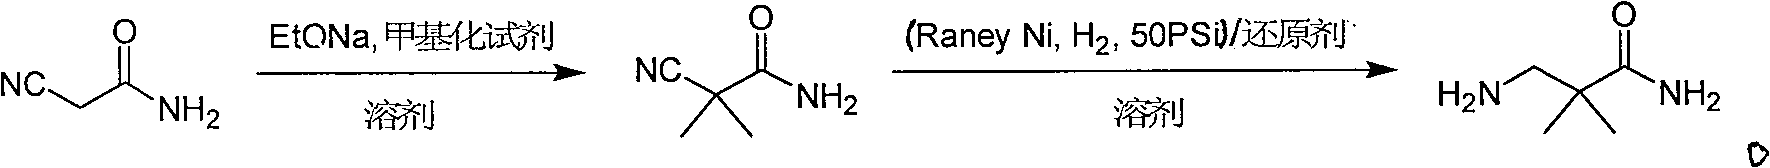 Industrial preparation method for 3-amino-2, 2-dimethyl propionamide